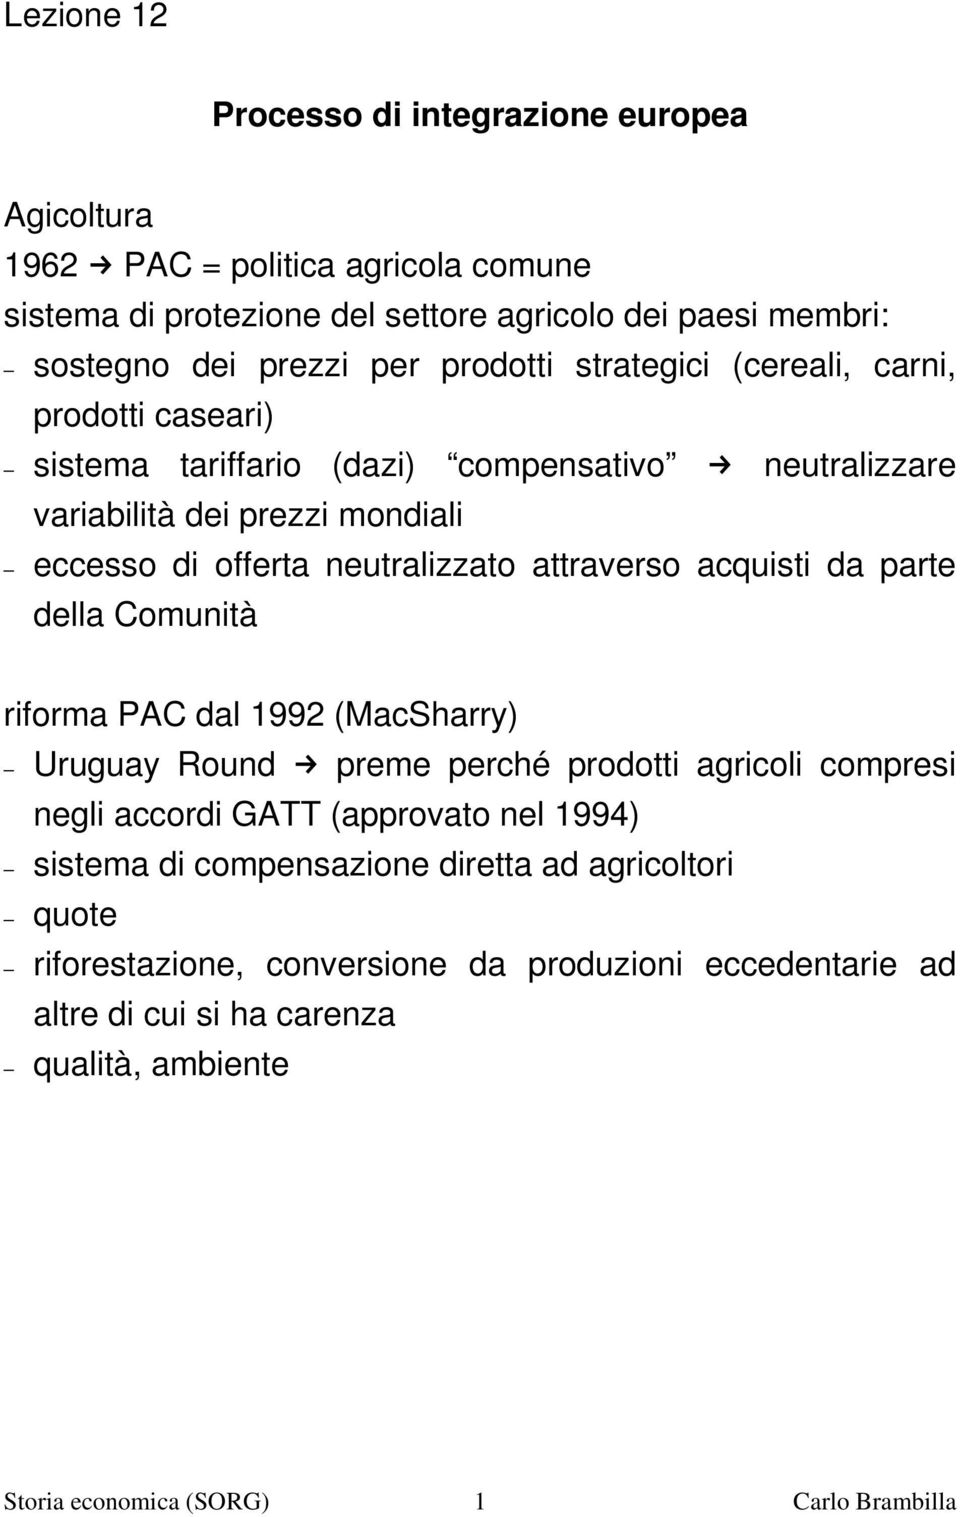 attraverso acquisti da parte della Comunità riforma PAC dal 1992 (MacSharry) Uruguay Round preme perché prodotti agricoli compresi negli accordi GATT (approvato nel 1994) sistema